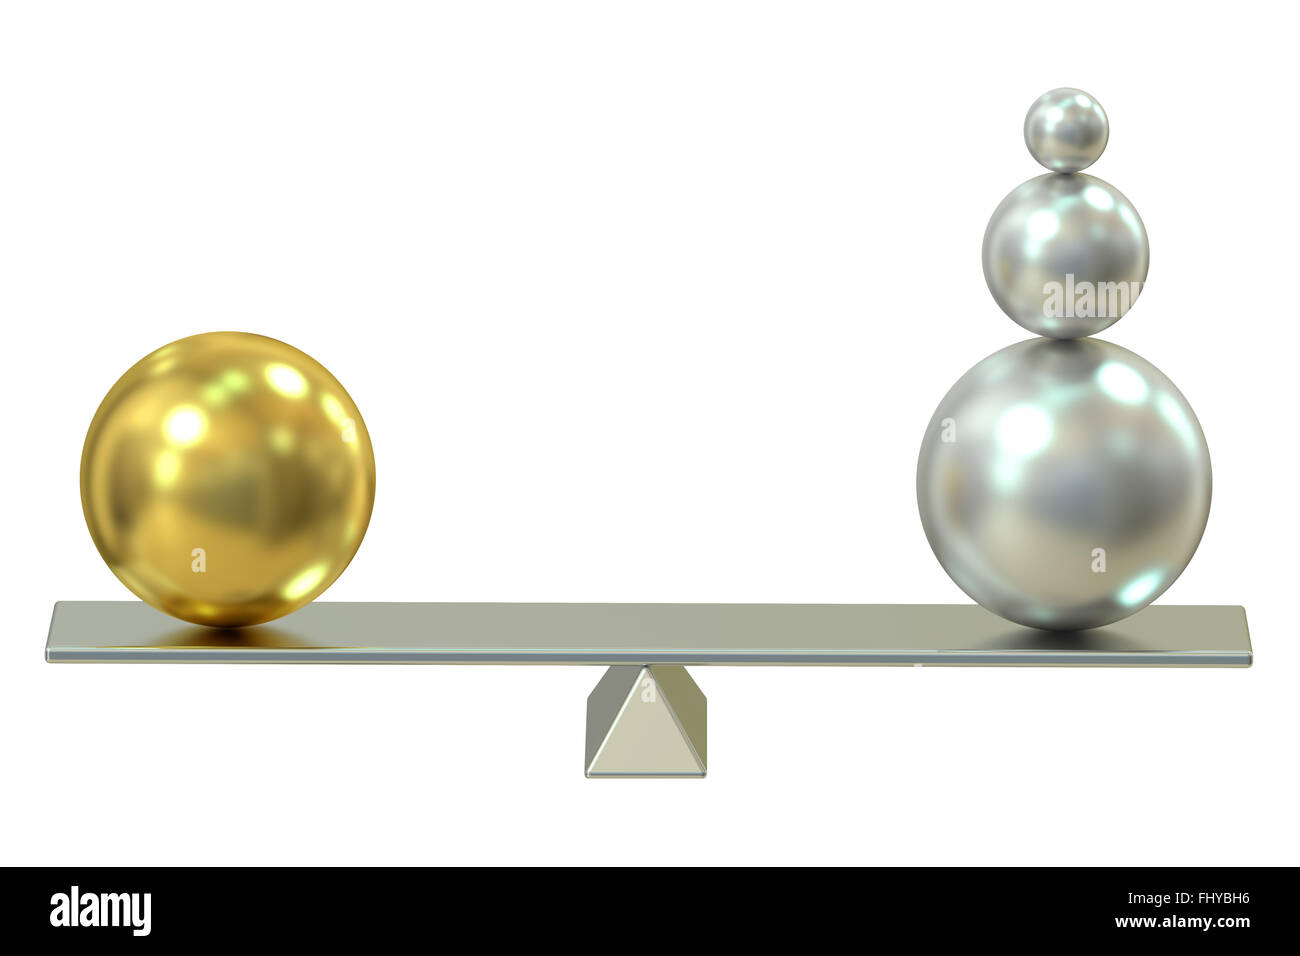 Balance concept isolated on white background Stock Photo